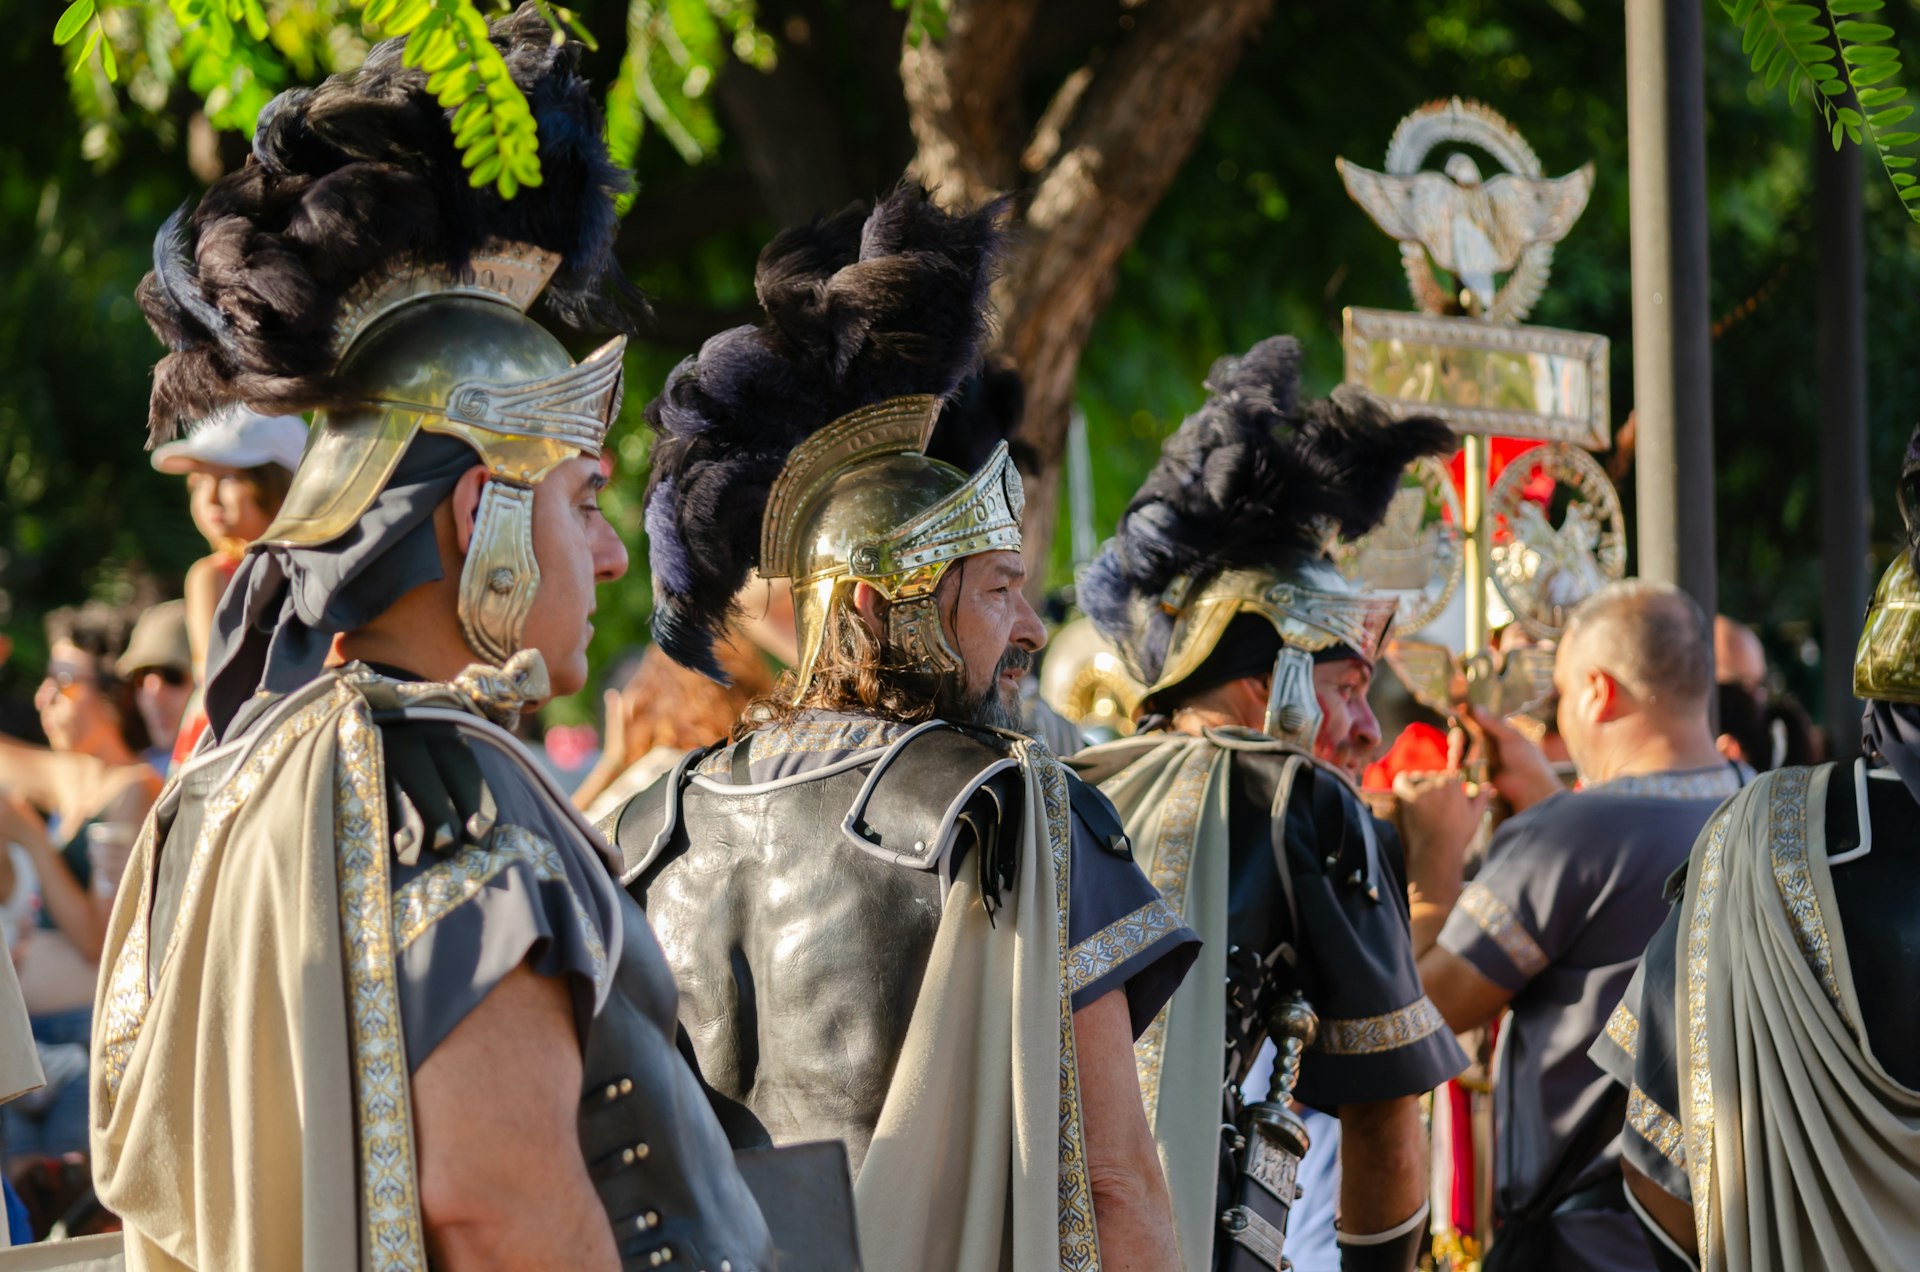 Reenactors in costume at the Fiestas de Carthagineses y Romanos, Cartagena, Murcia, Spain